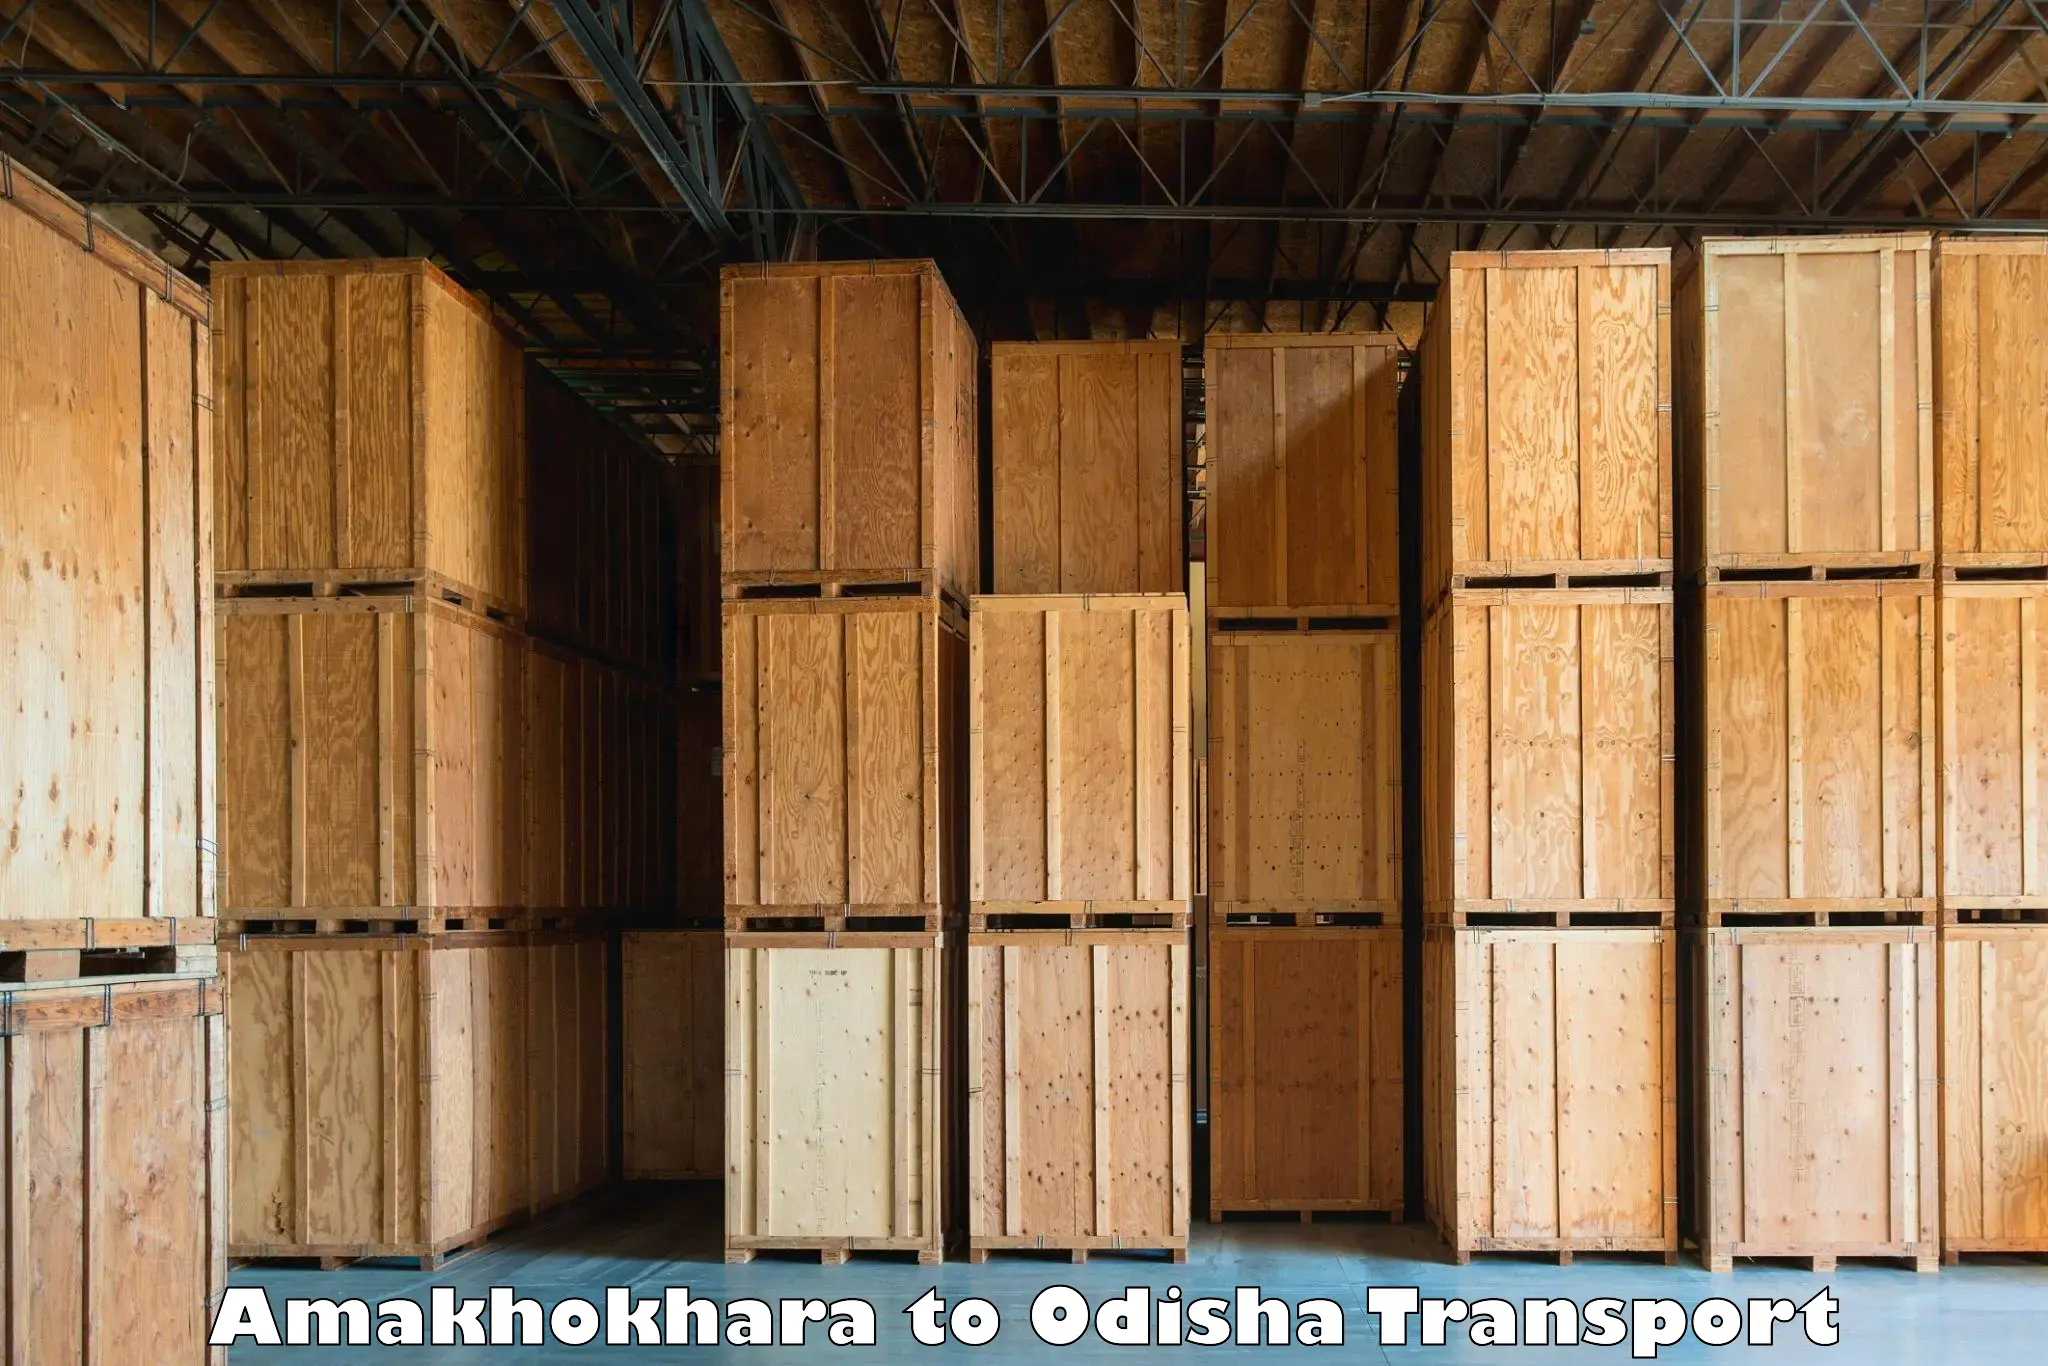 Online transport service Amakhokhara to Chhendipada